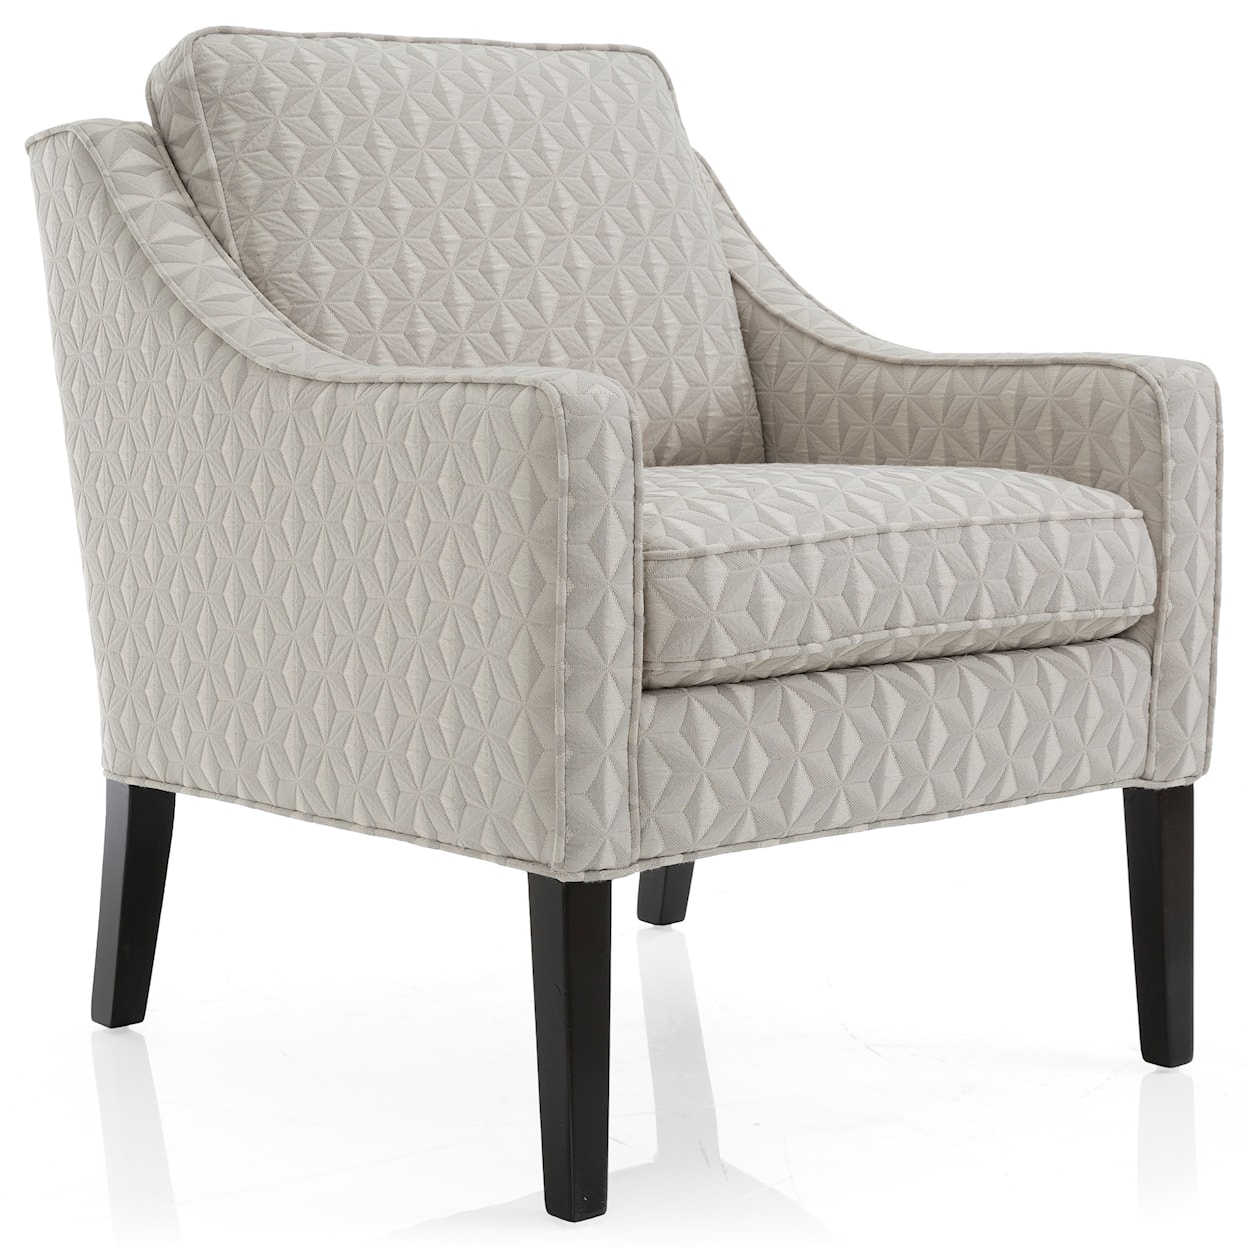 Decor-Rest Harper Upholstered Chair